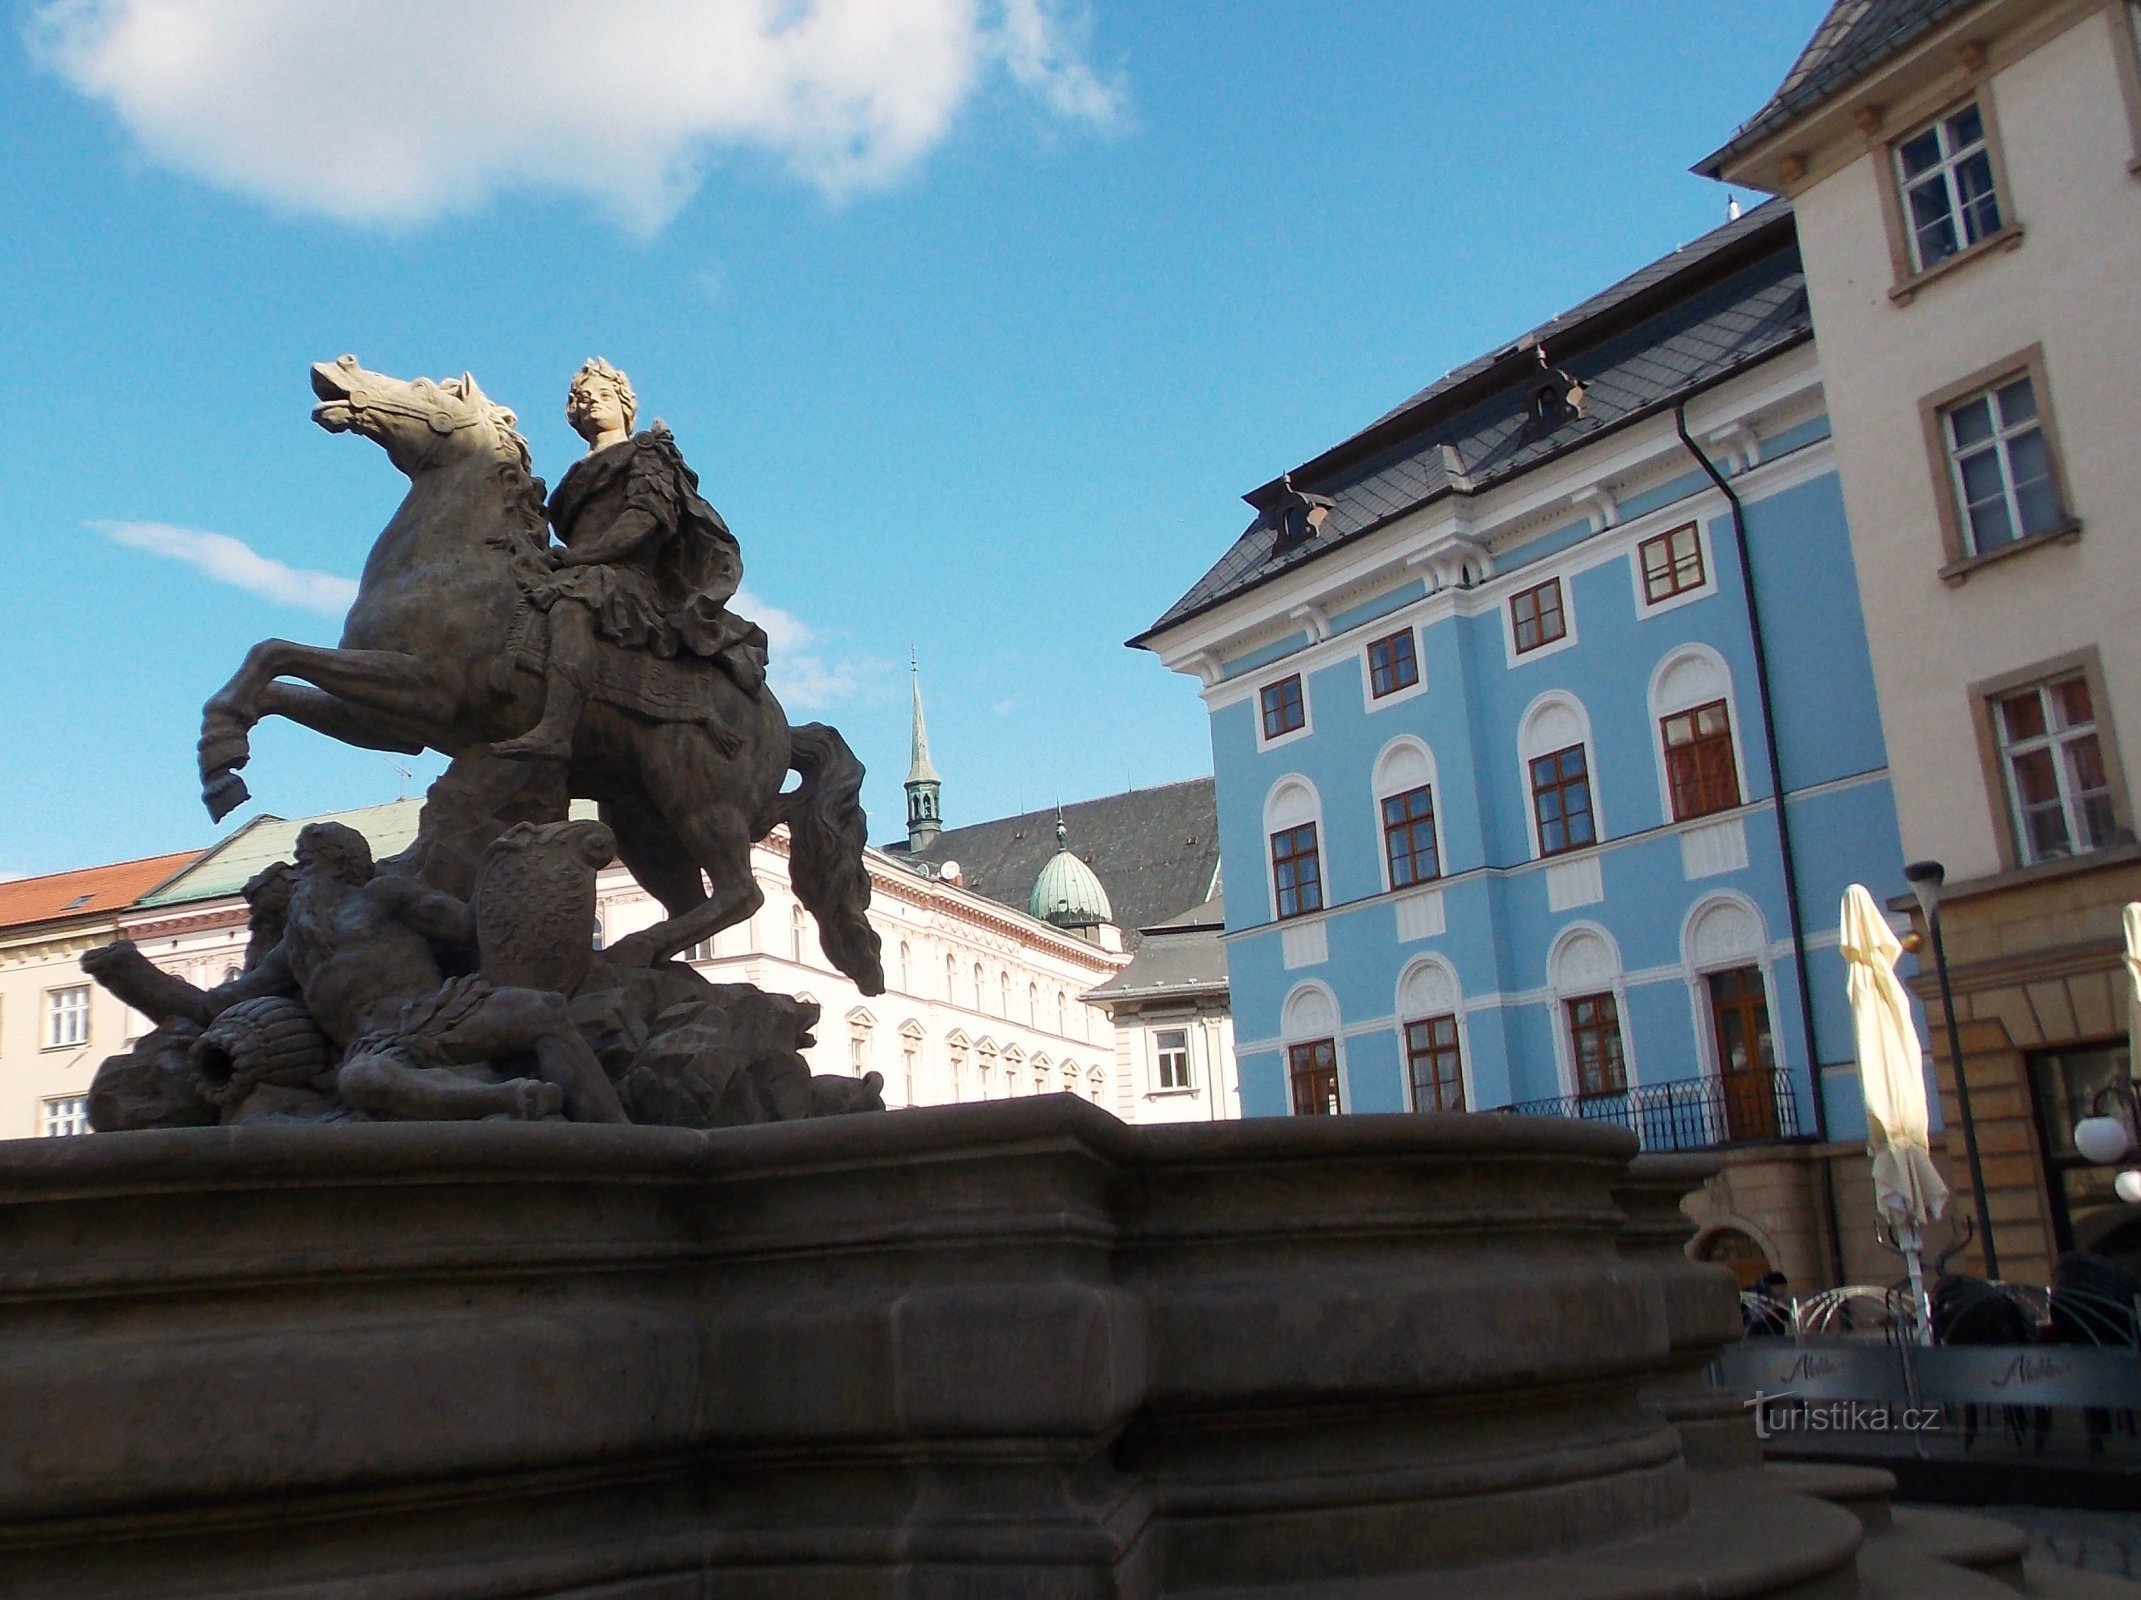 Interesting place on Horní náměstí in Olomouc